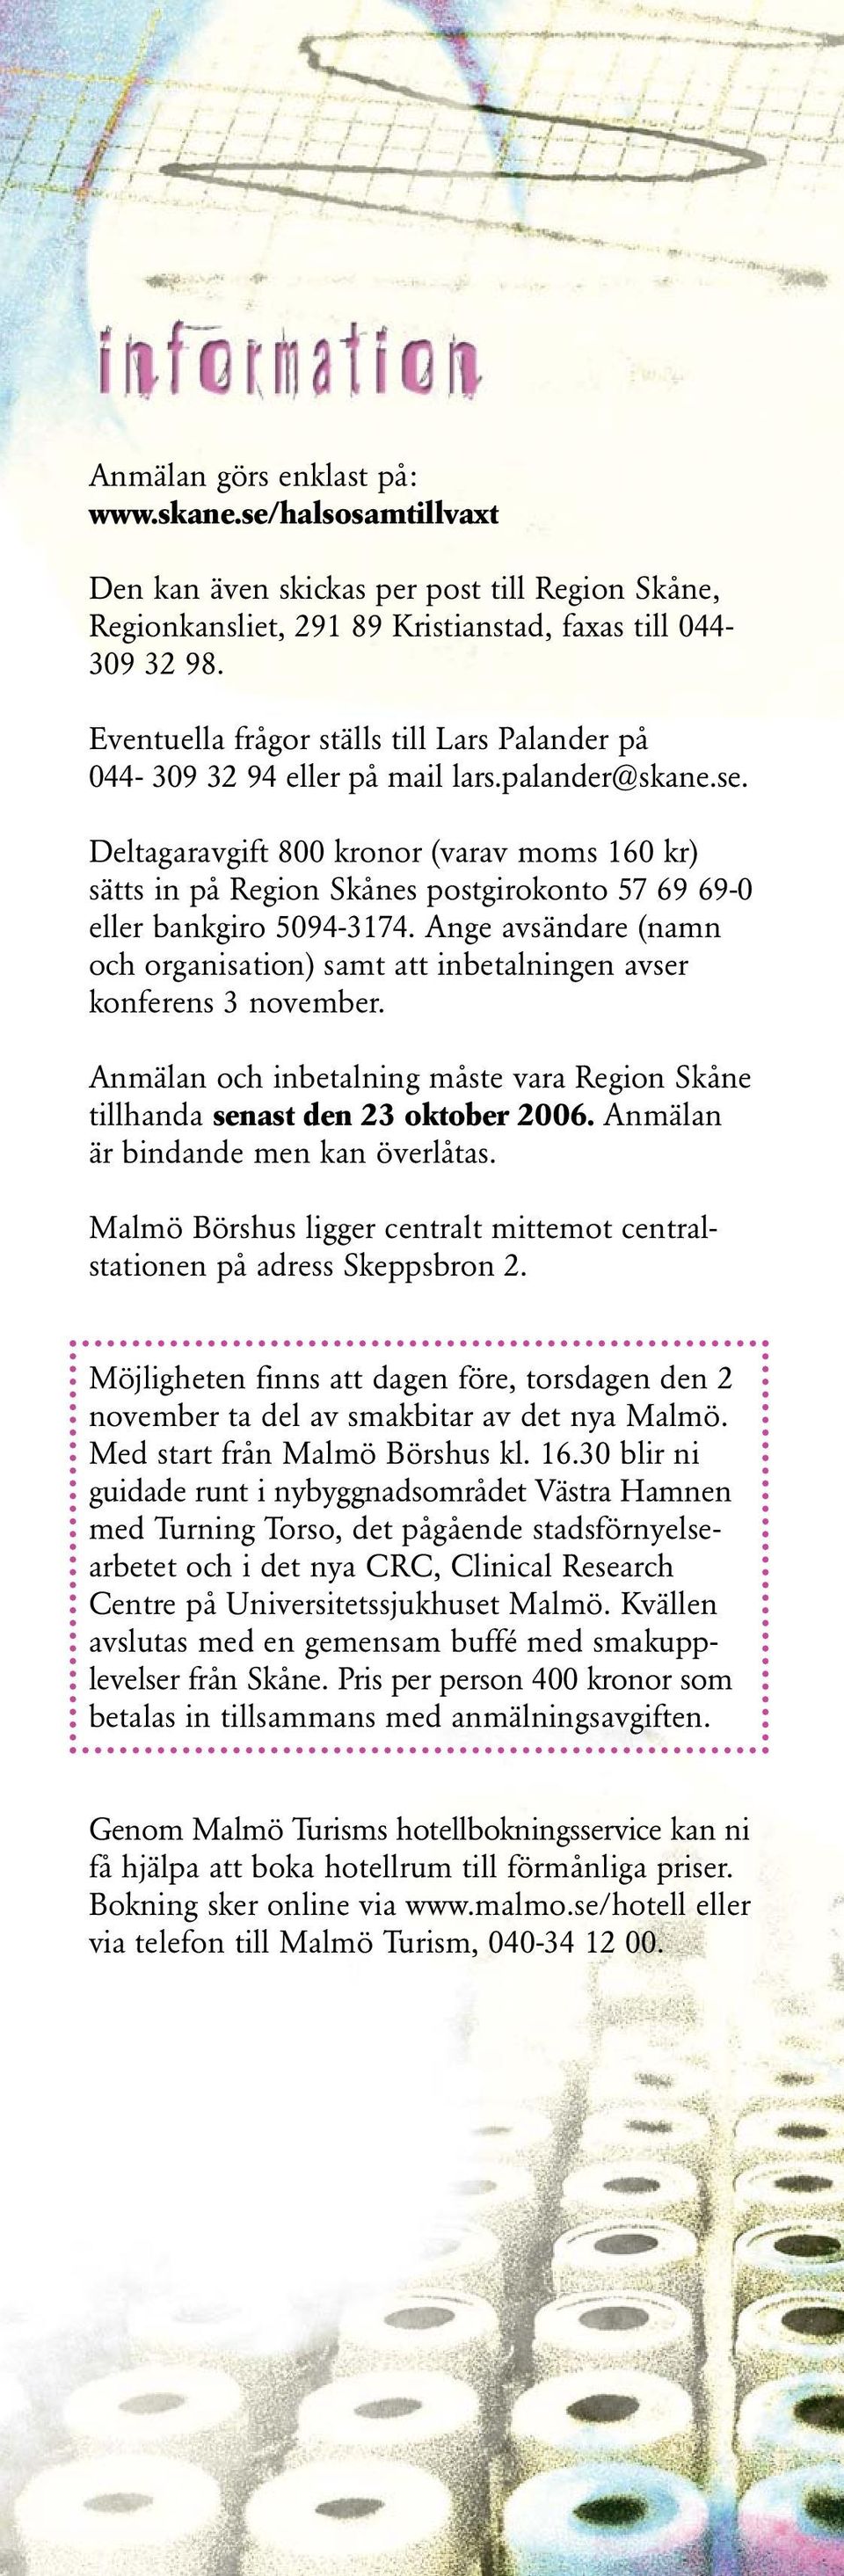 Deltagaravgift 800 kronor (varav moms 160 kr) sätts in på Region Skånes postgirokonto 57 69 69-0 eller bankgiro 5094-3174.